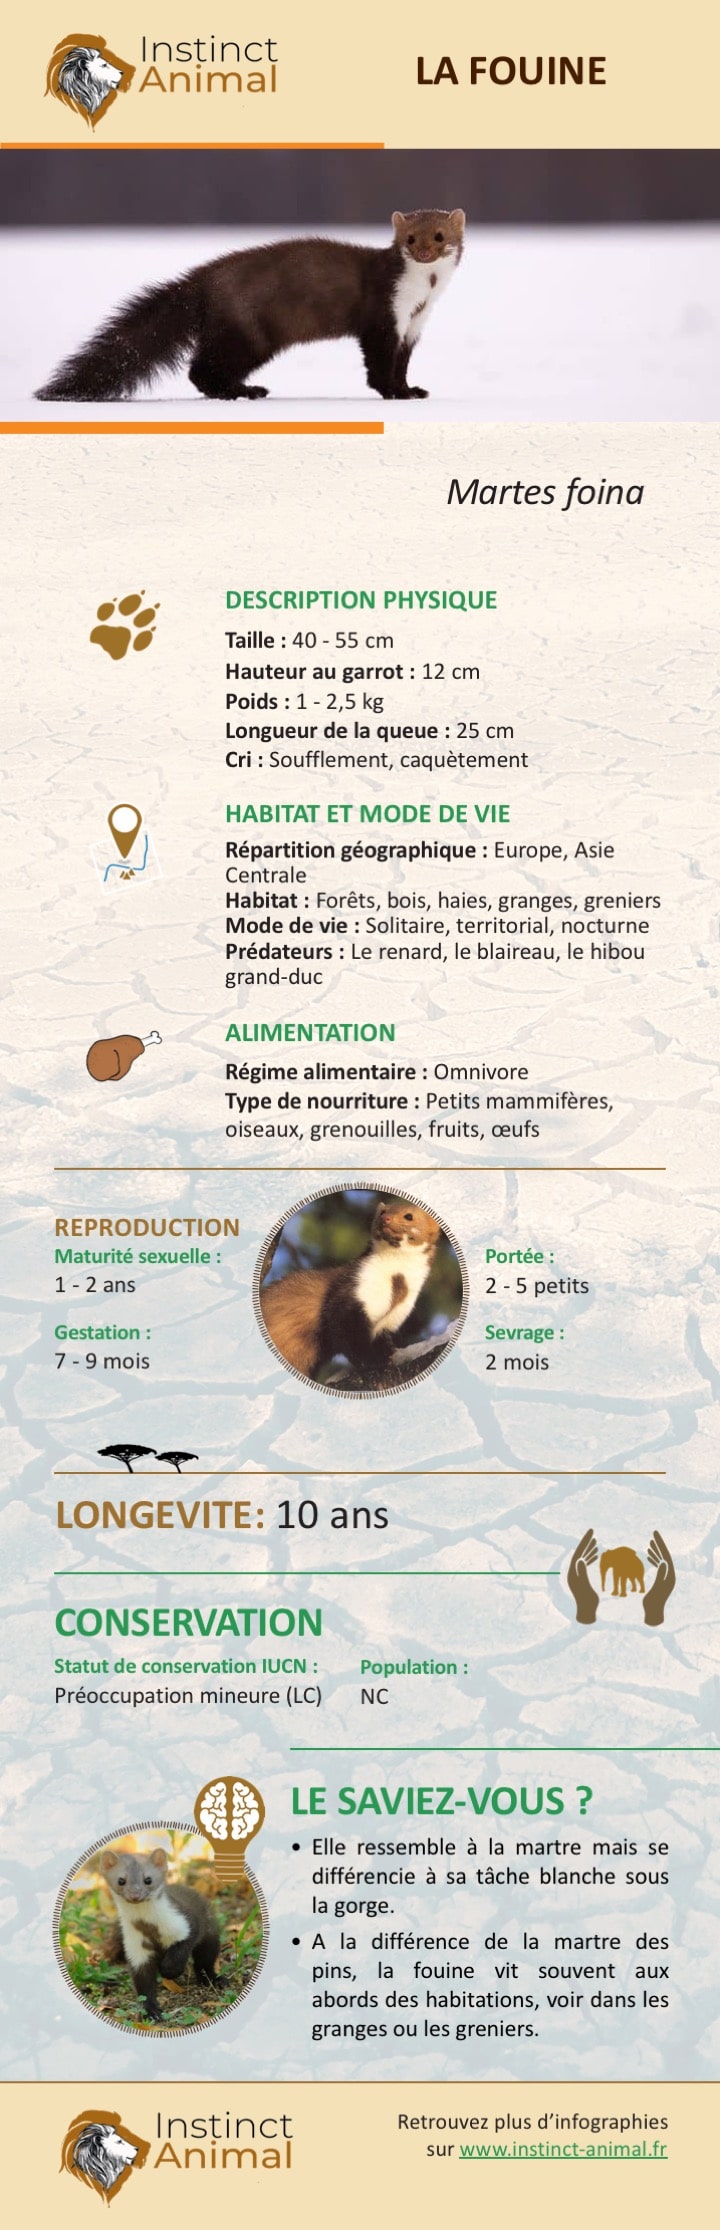 Description de la fouine - Infographie - Instinct Animal